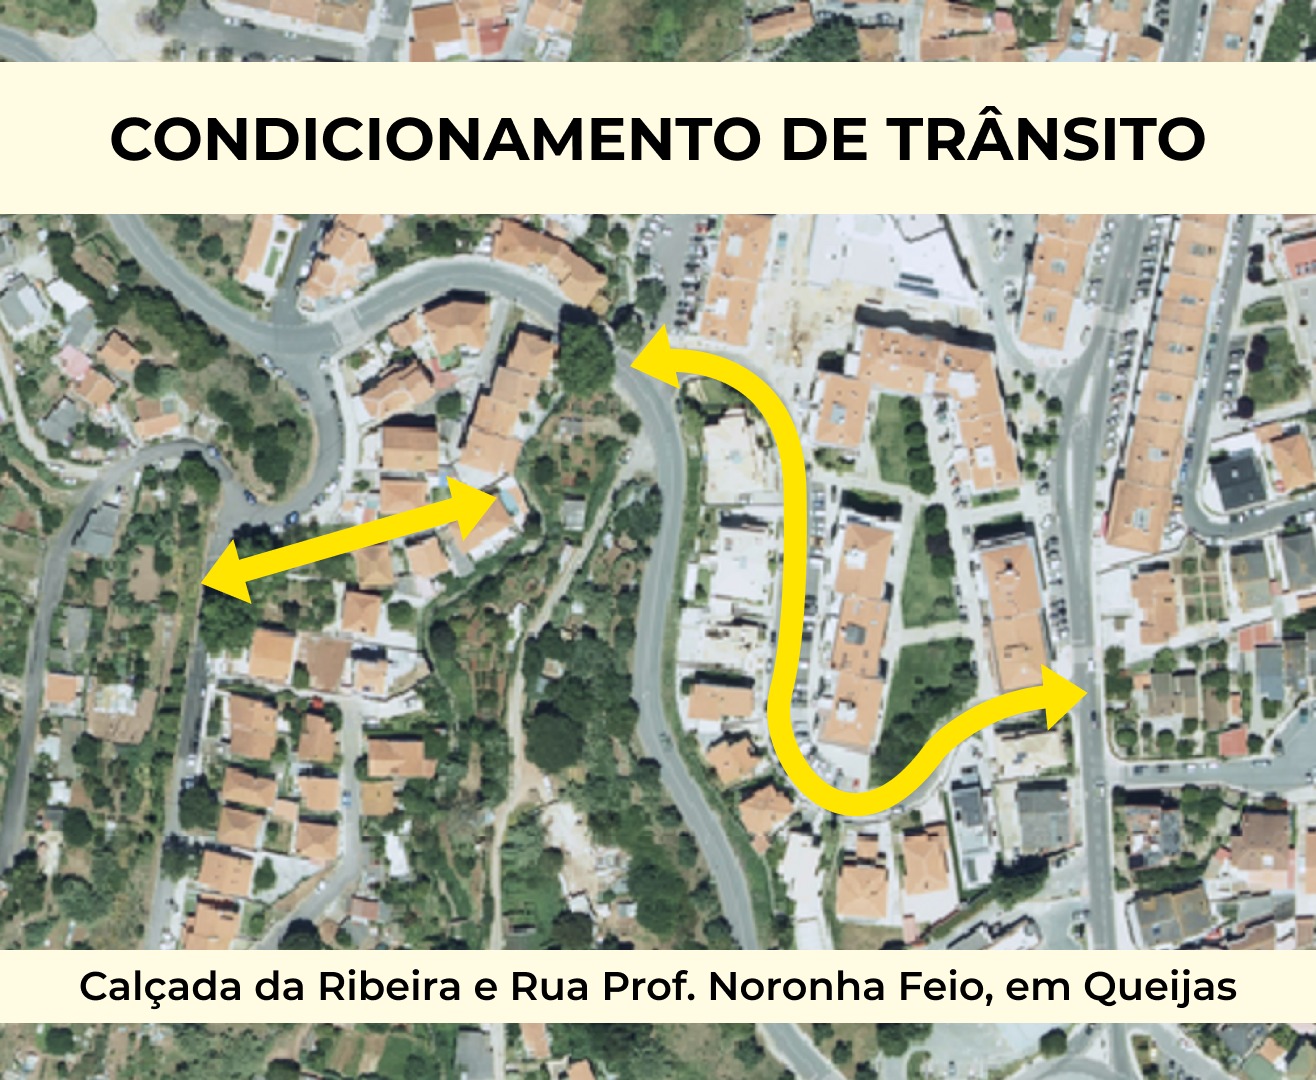 Vista google maps da Calçada da Ribeira e Rua Prof. Noronha Feio